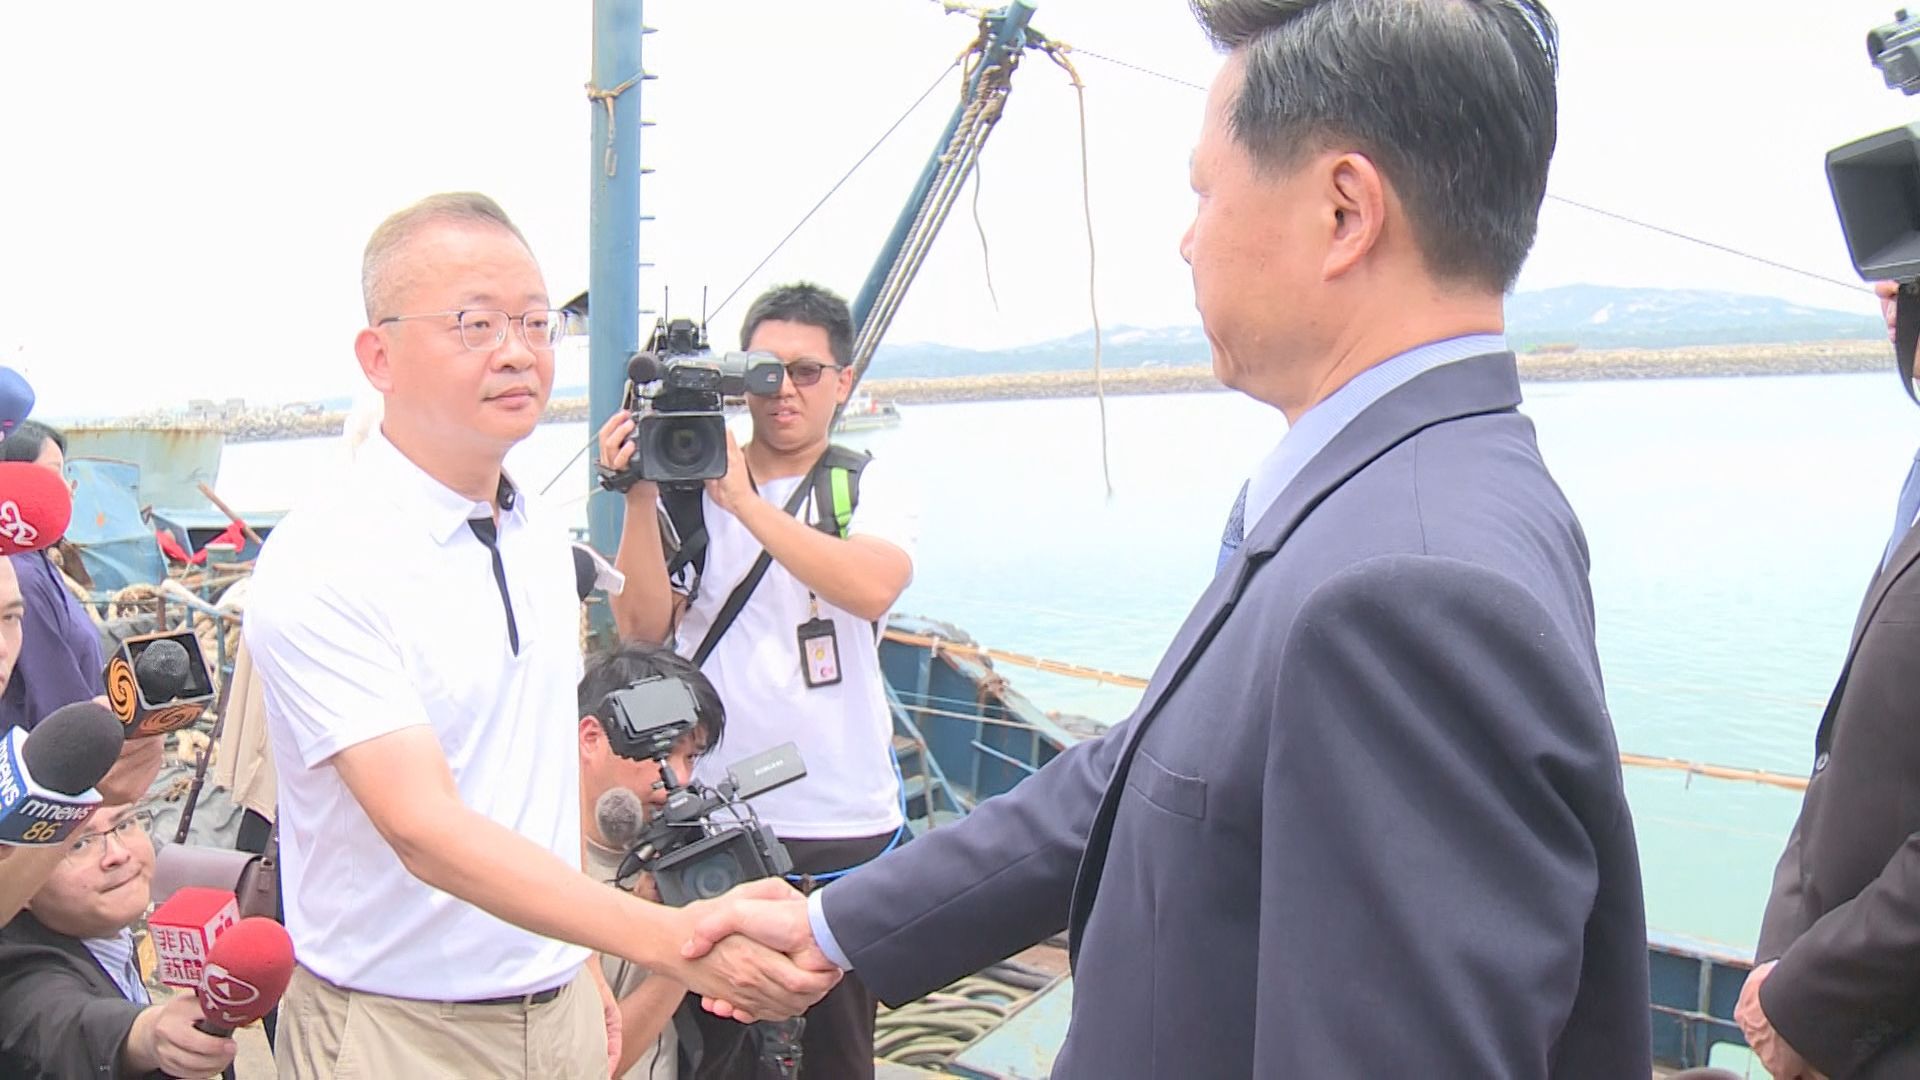 2月の金門島付近での漁船沈没めぐり、台湾側が死亡した中国人漁師に慰謝料3000万円以上支払いか　台湾メディア報じる